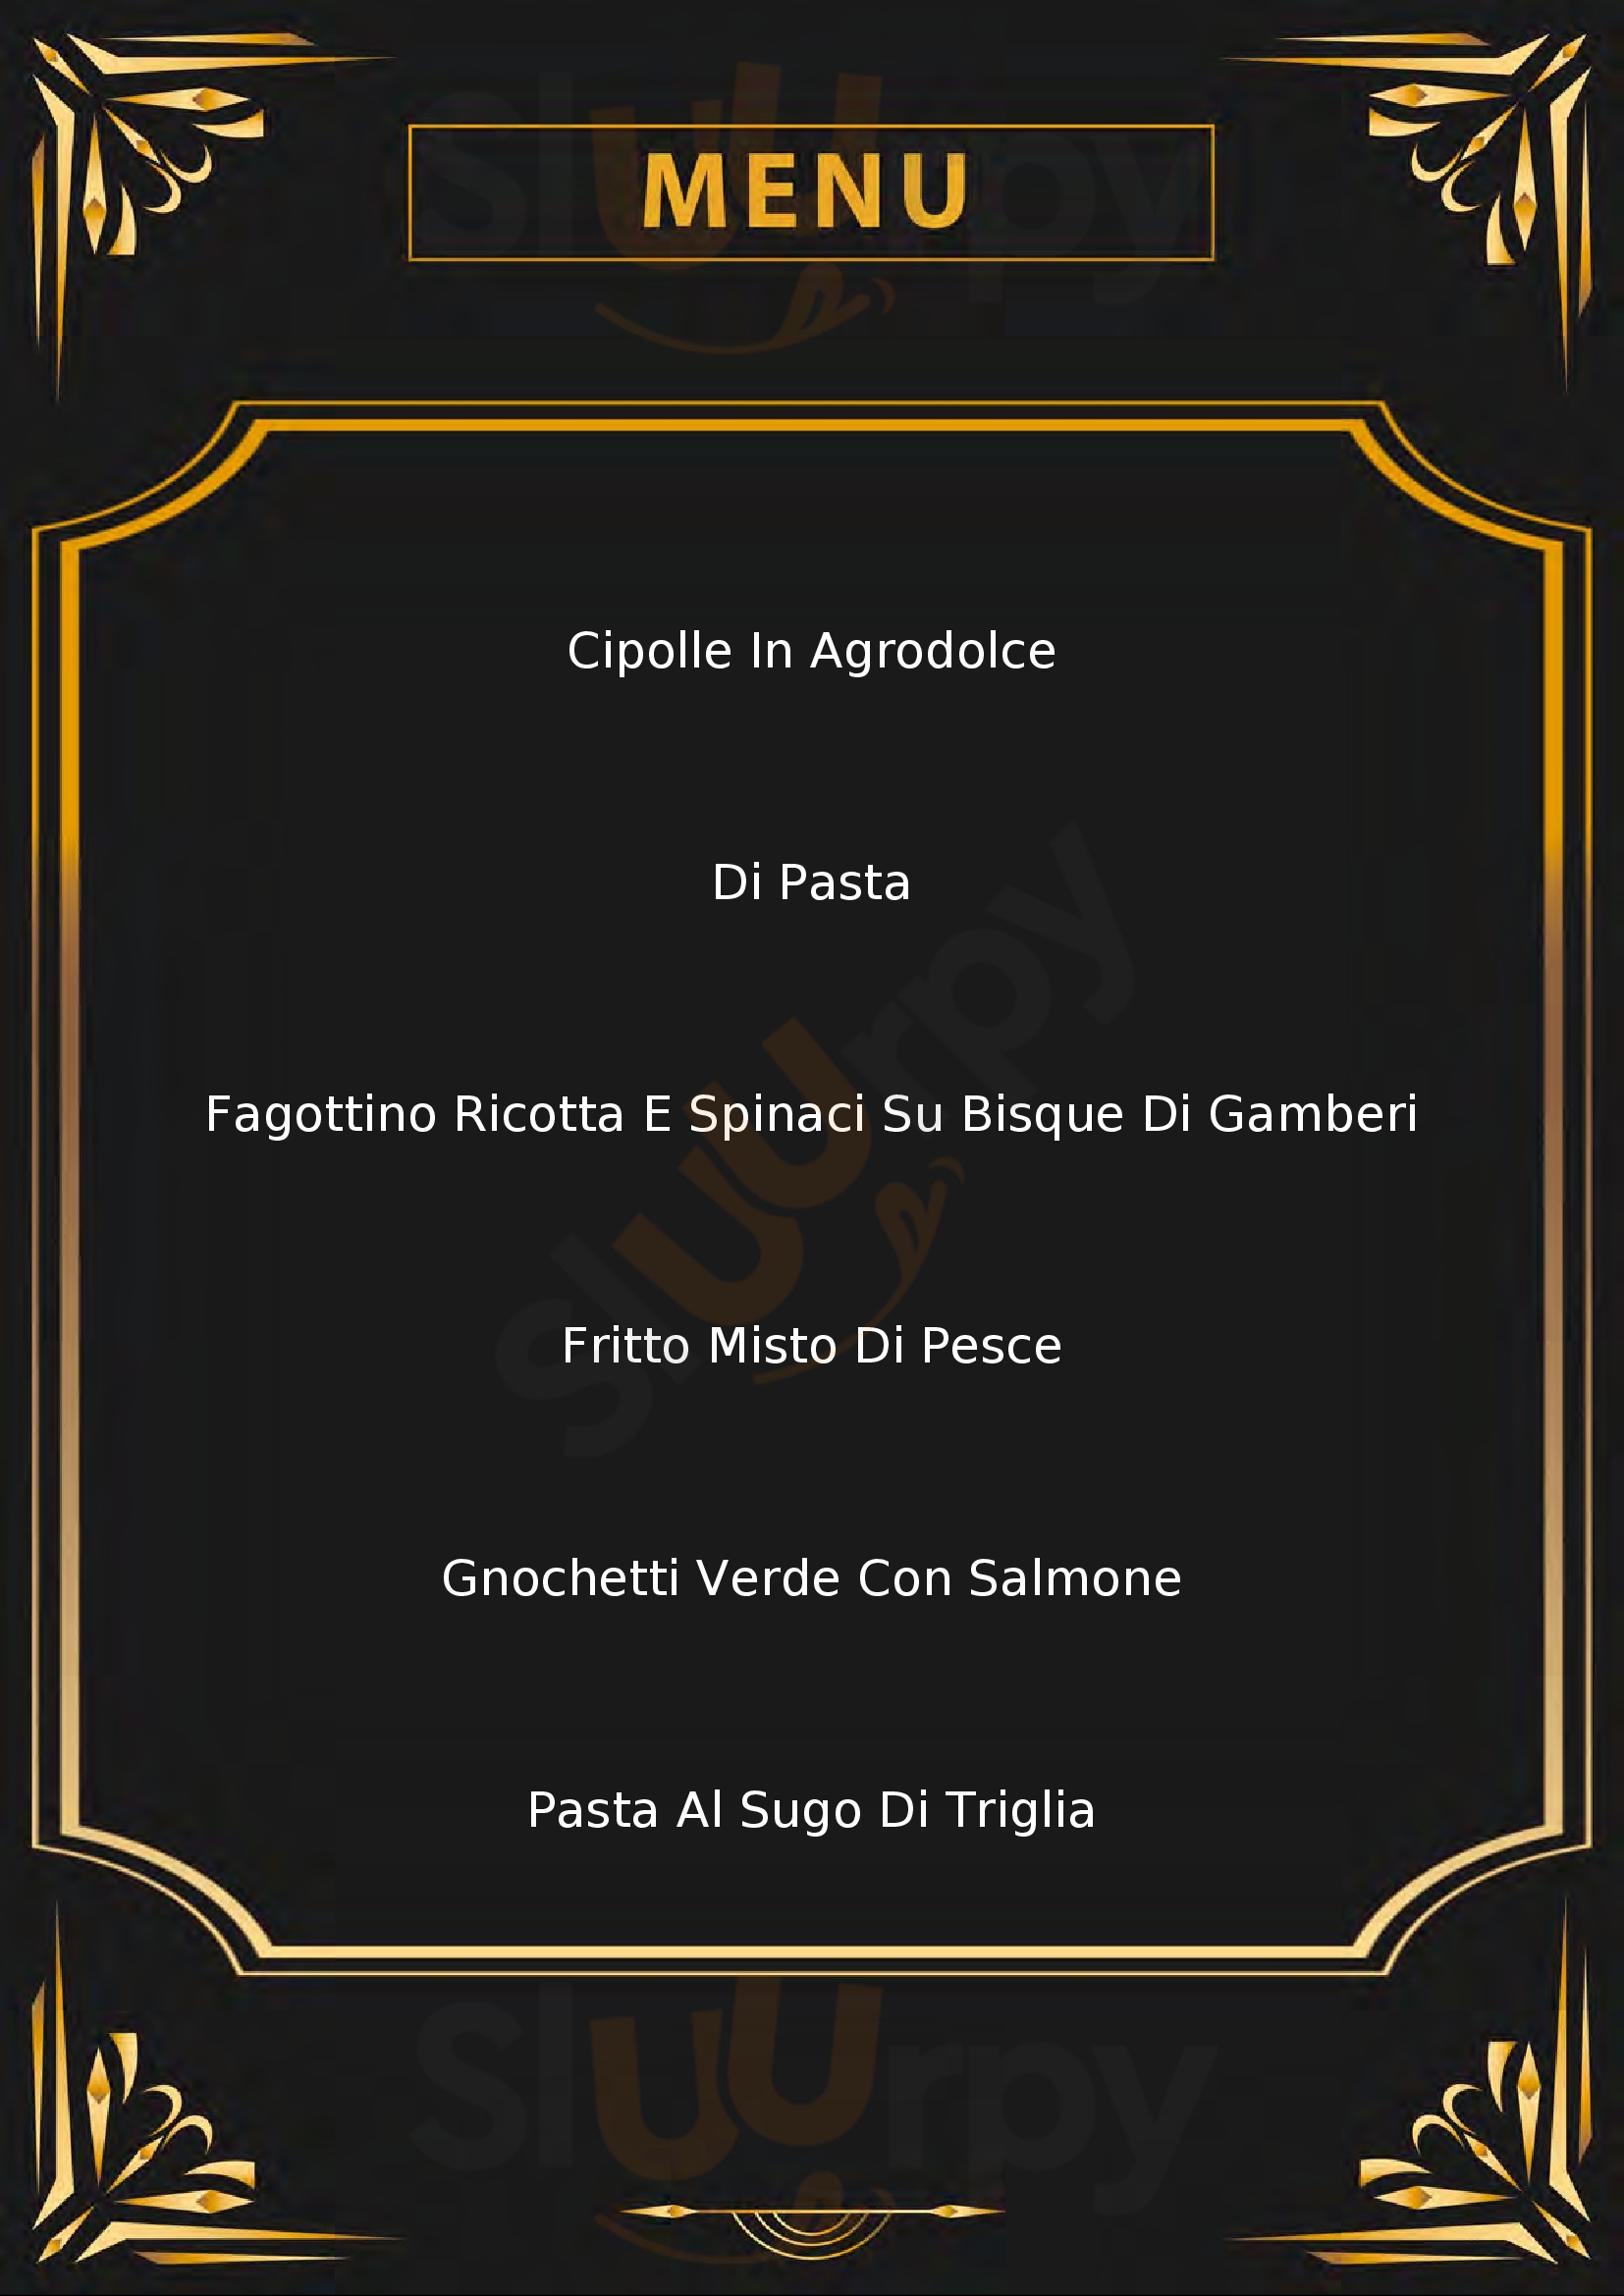 Gastronomia da Salva Tirrenia menù 1 pagina